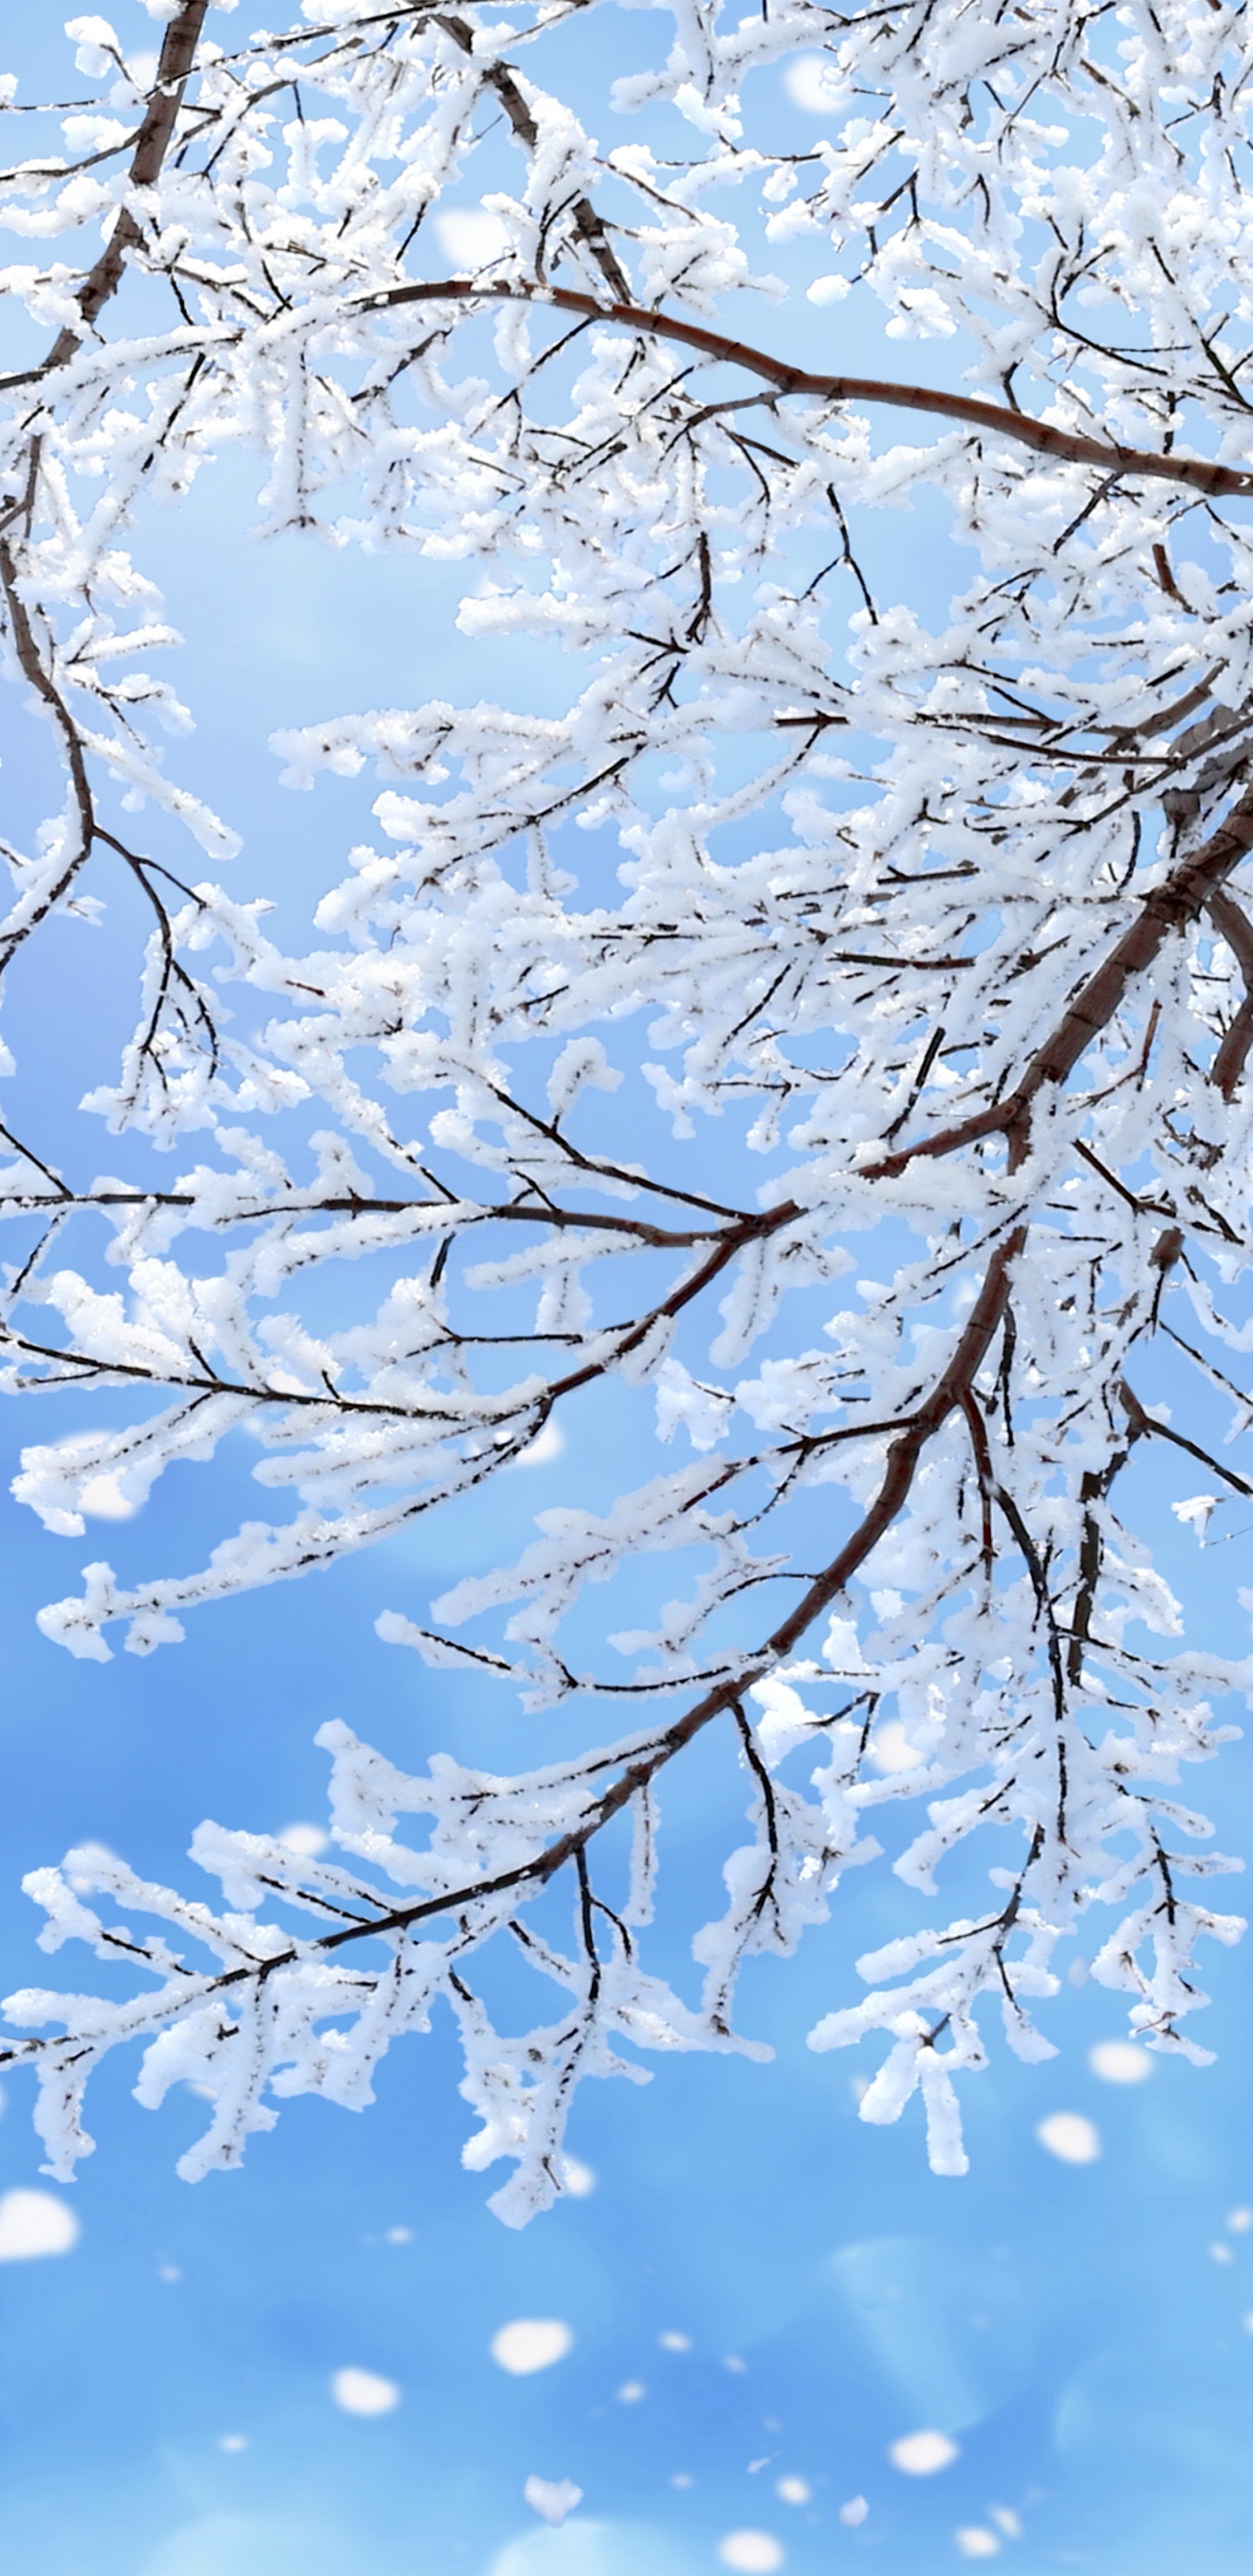 冬天, 树枝, 雪花, 季节, 冻结 壁纸 1440x2960 允许